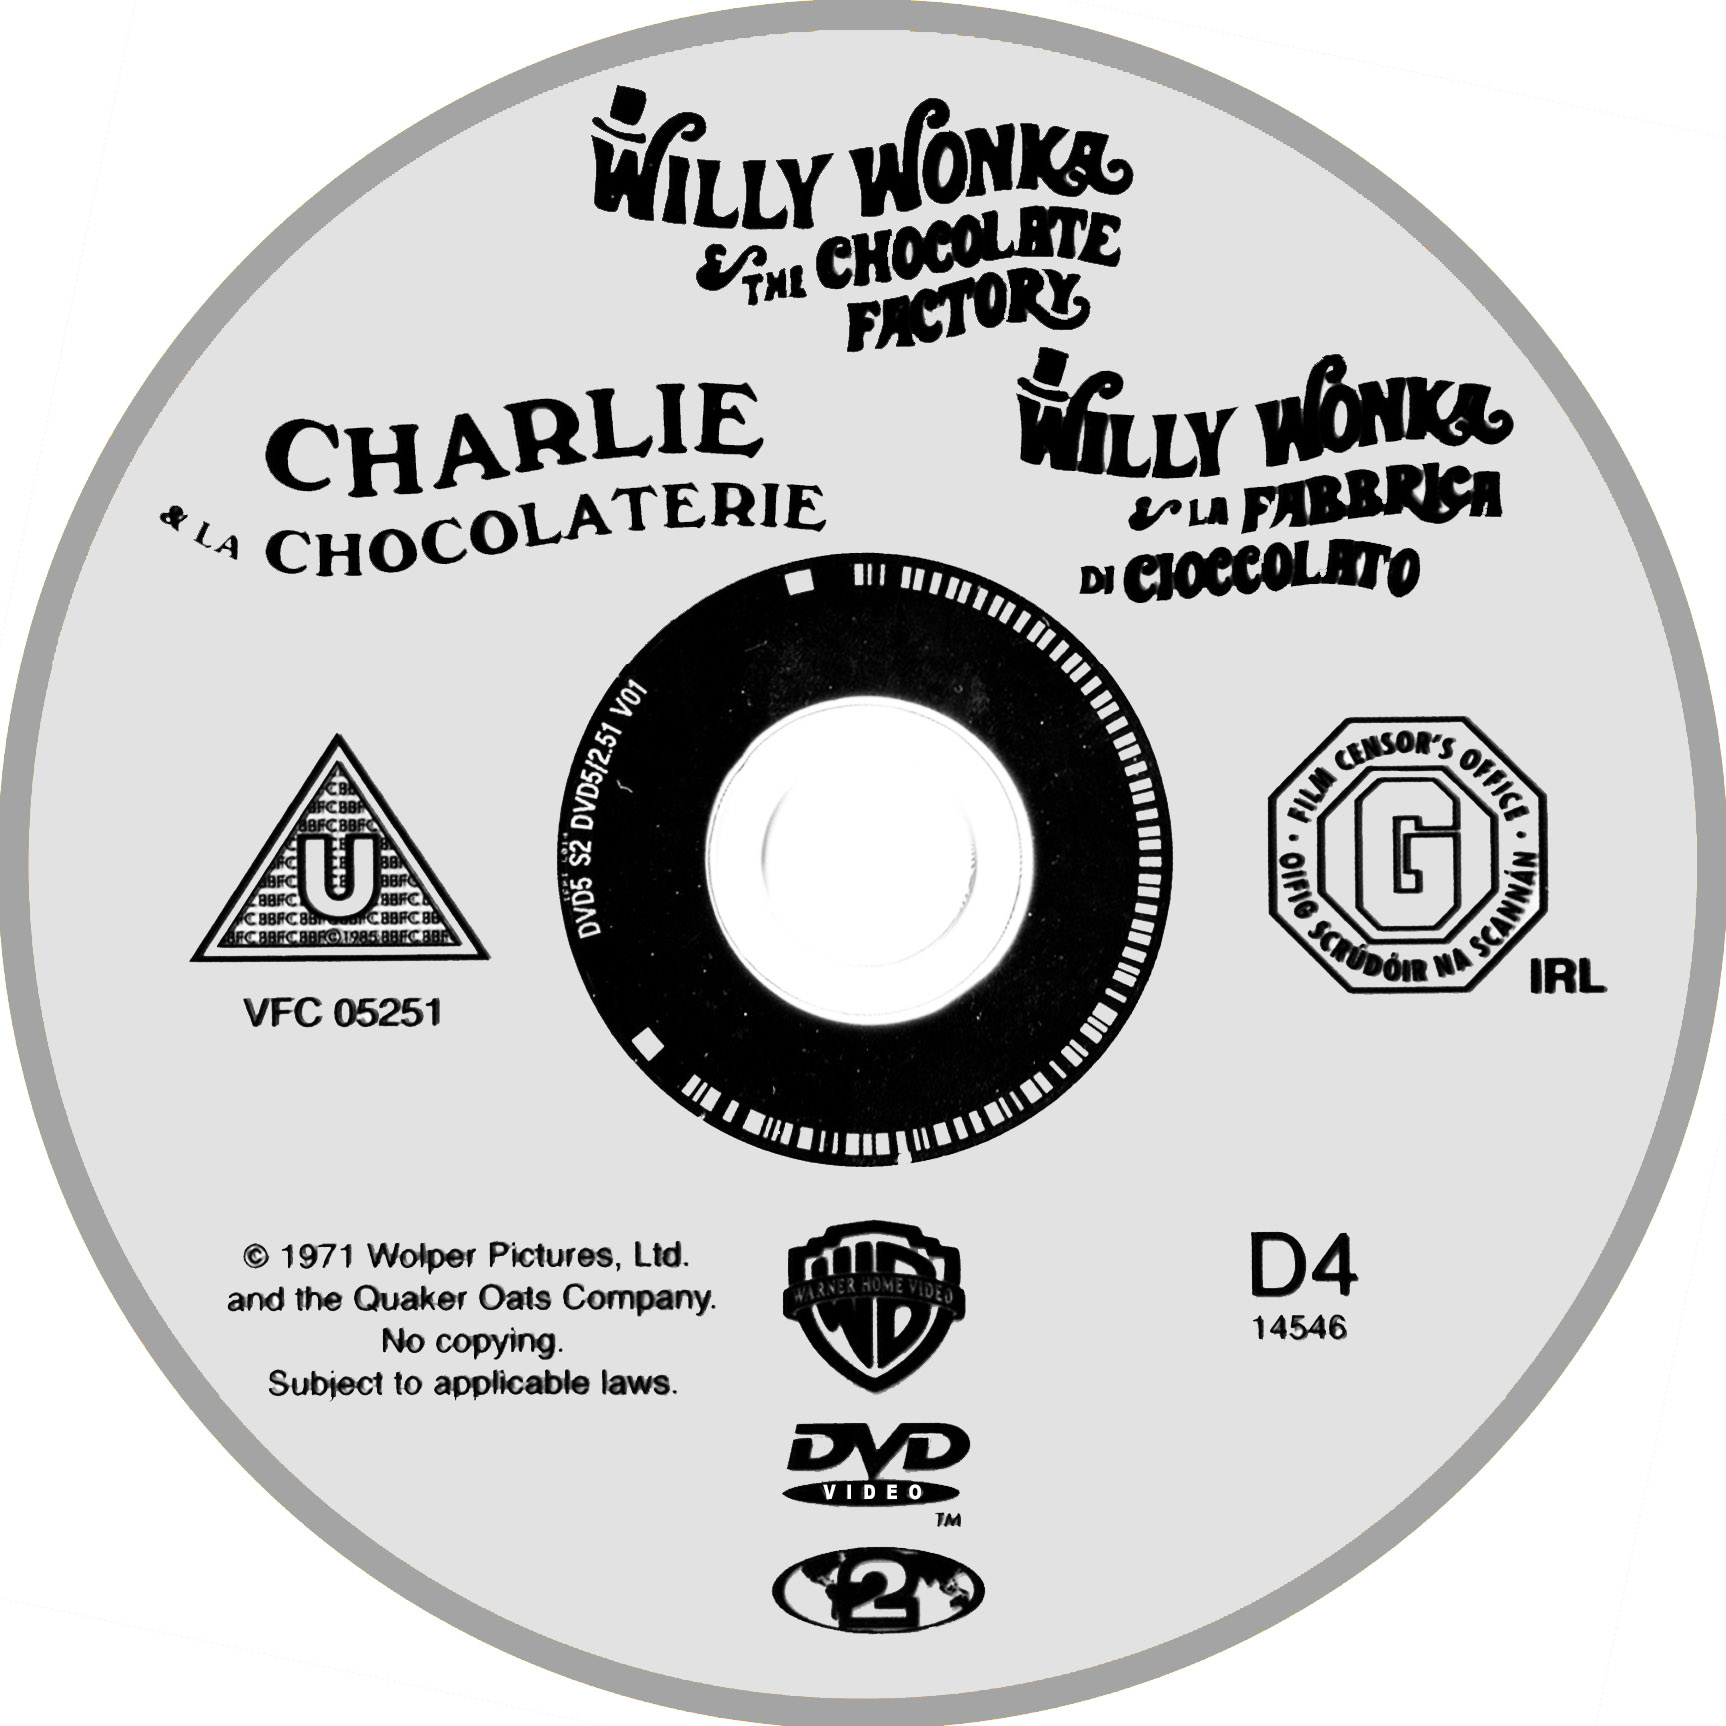 Charlie et la chocolaterie (1971)